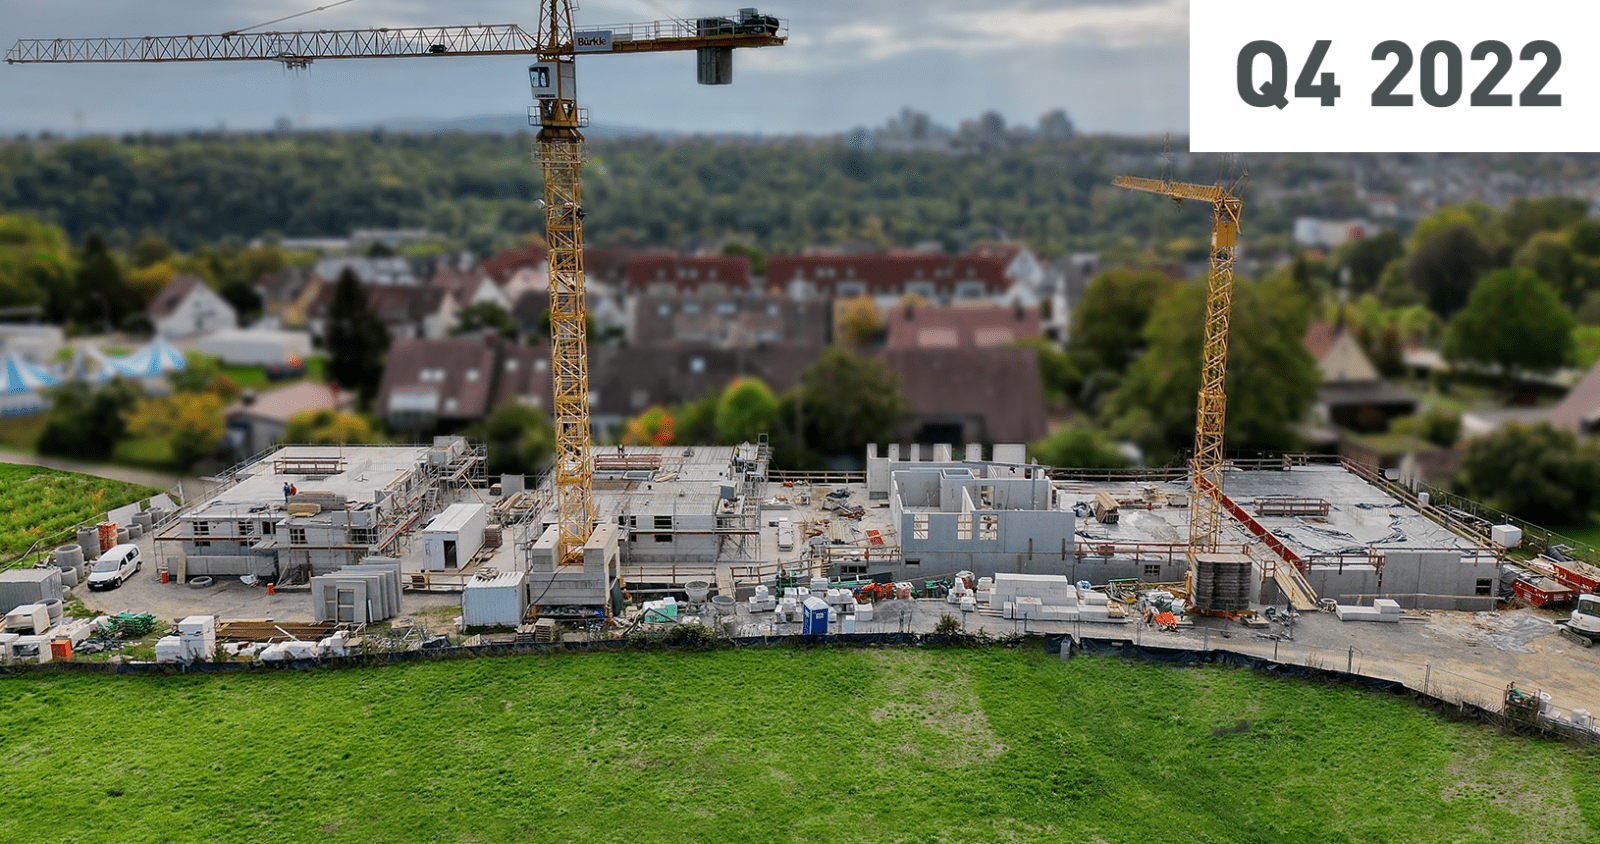 Baustellenansicht im vierten Quartal 2022 des Neubauprojekts Sonnenhöhe in Stuttgart. Fortschritte und Entwicklungen auf der Baustelle für ein modernes und zukunftsweisendes Wohnprojekt. Erfahren Sie mehr unter: https://www.sonnenhoehe-stuttgart.de/